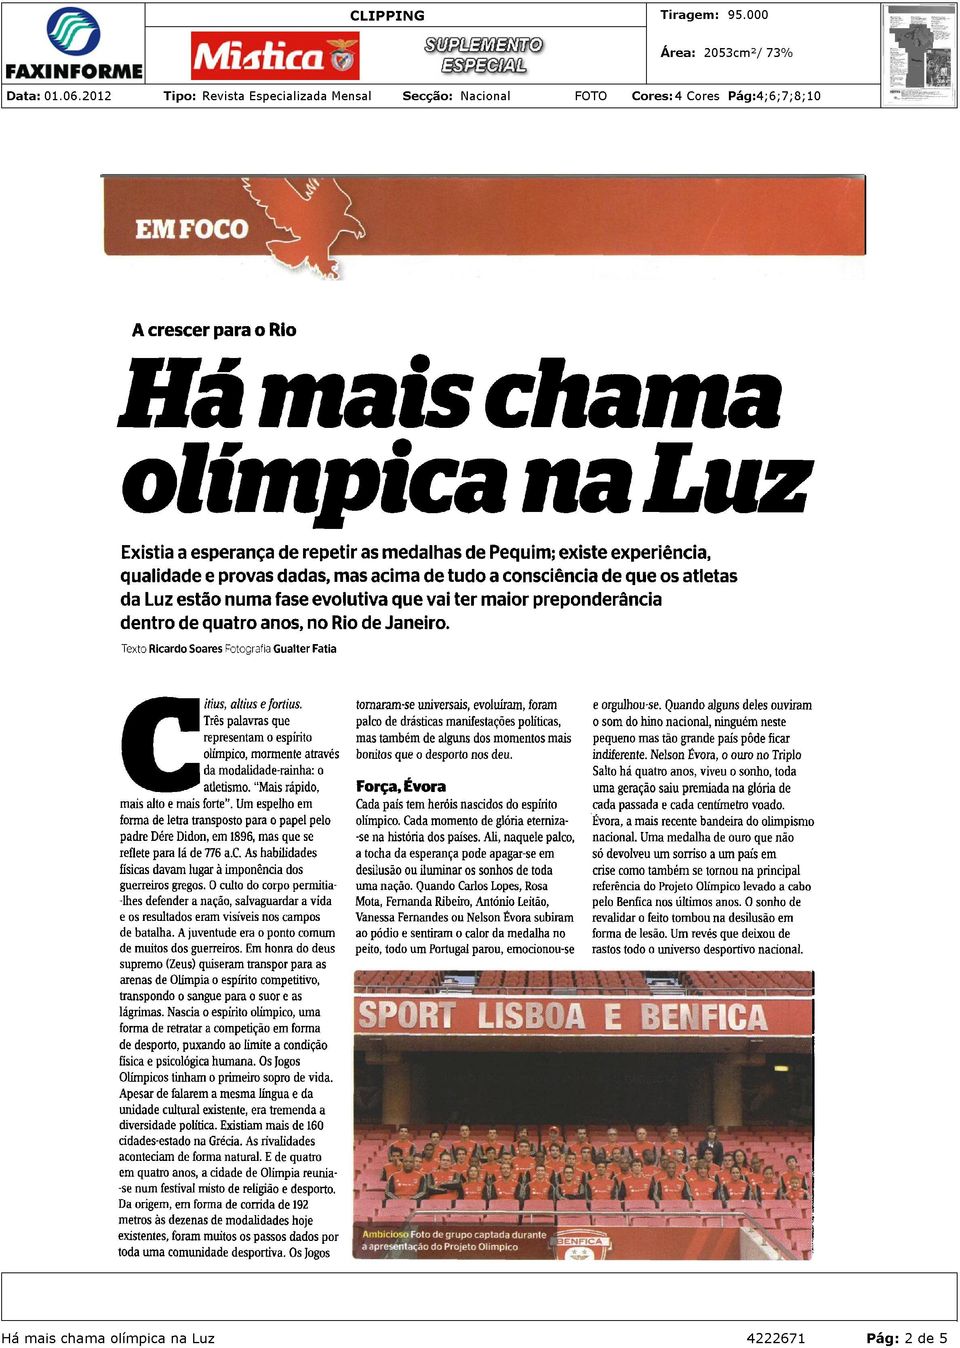 Muitos formados no Benfica, outros tendo como destino a Luz.